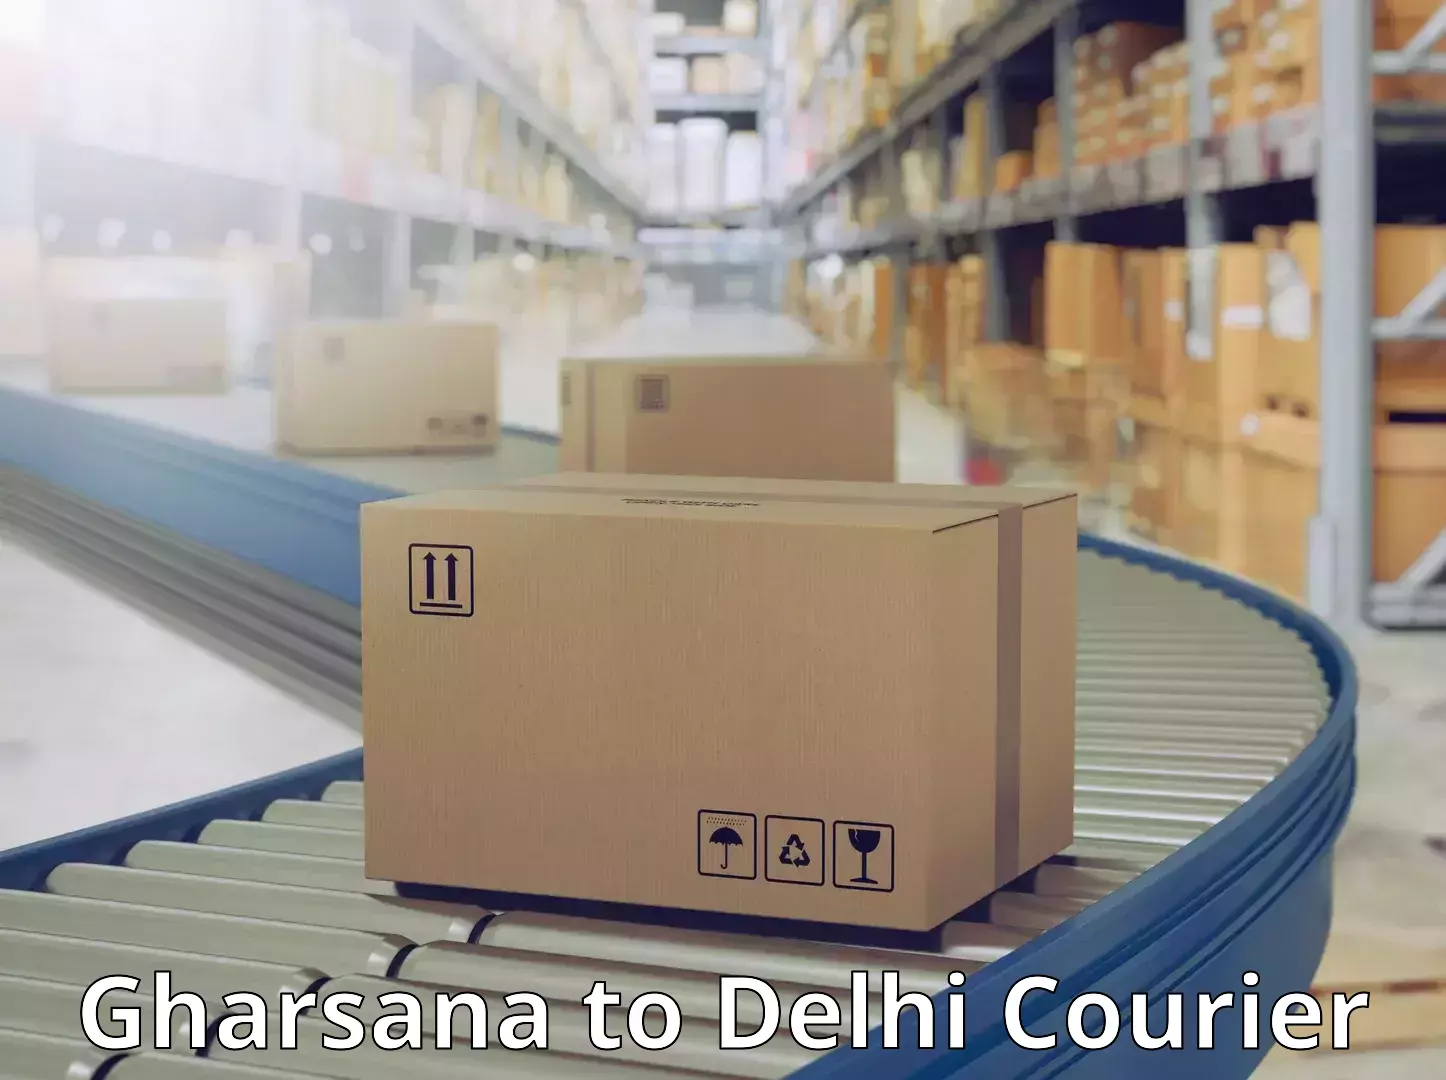 Express courier facilities Gharsana to Delhi